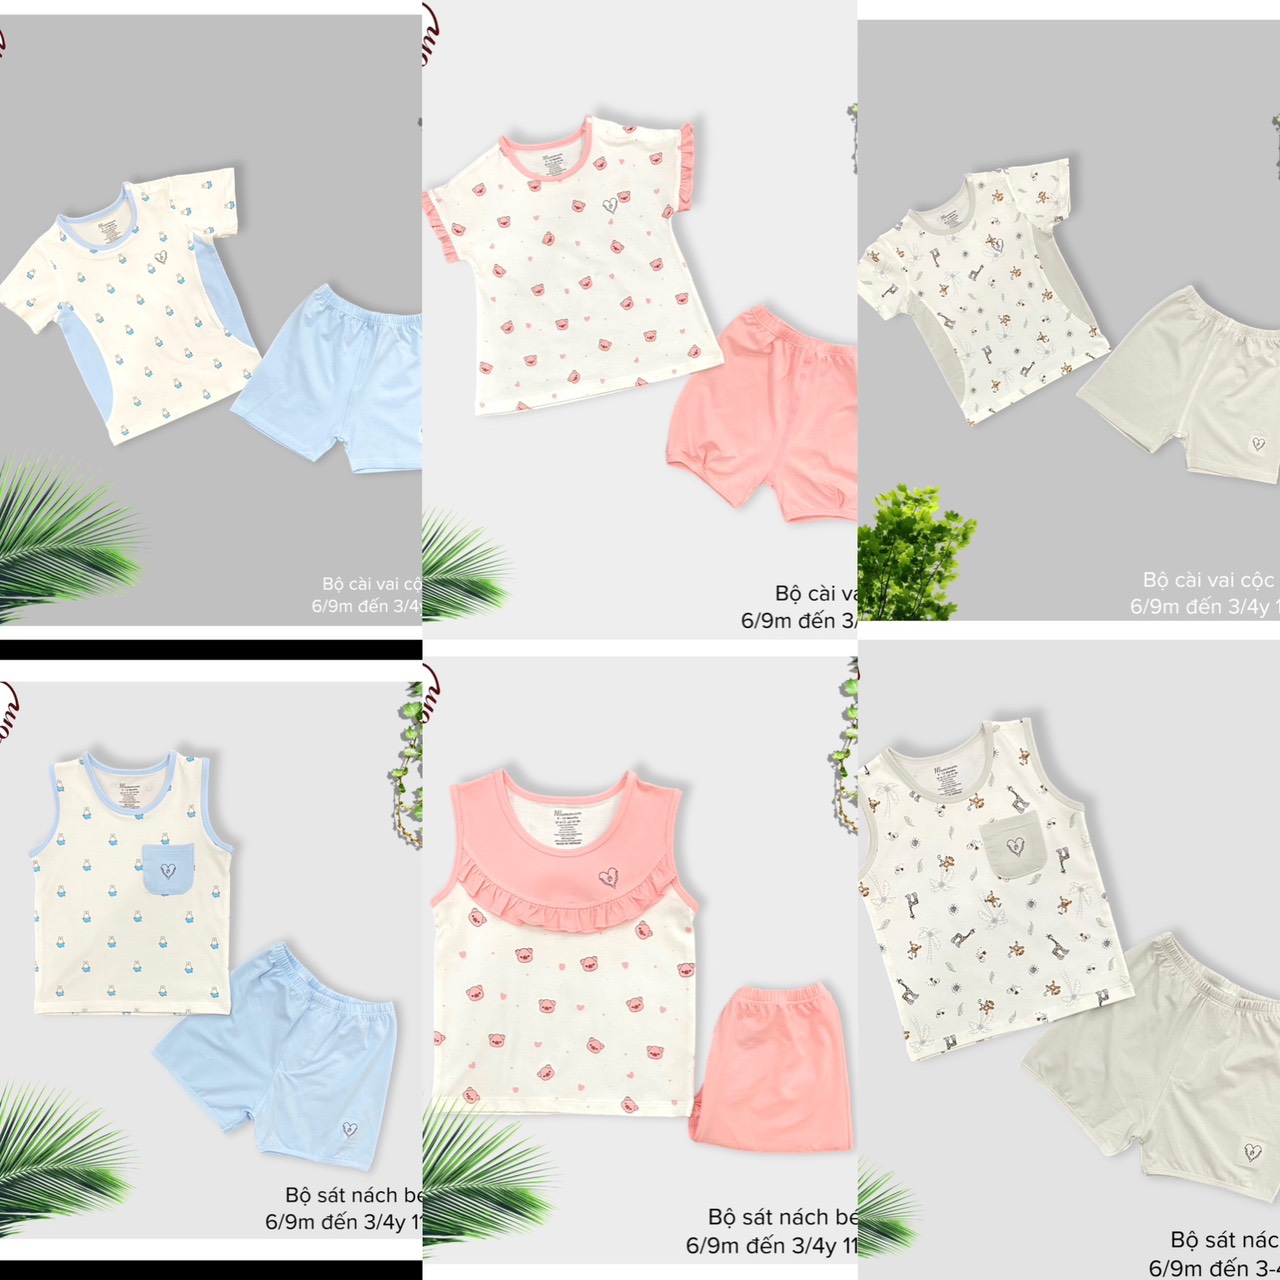 MOMMOM - Bộ quần áo cho bé từ 6 tháng đến 4 tuổi